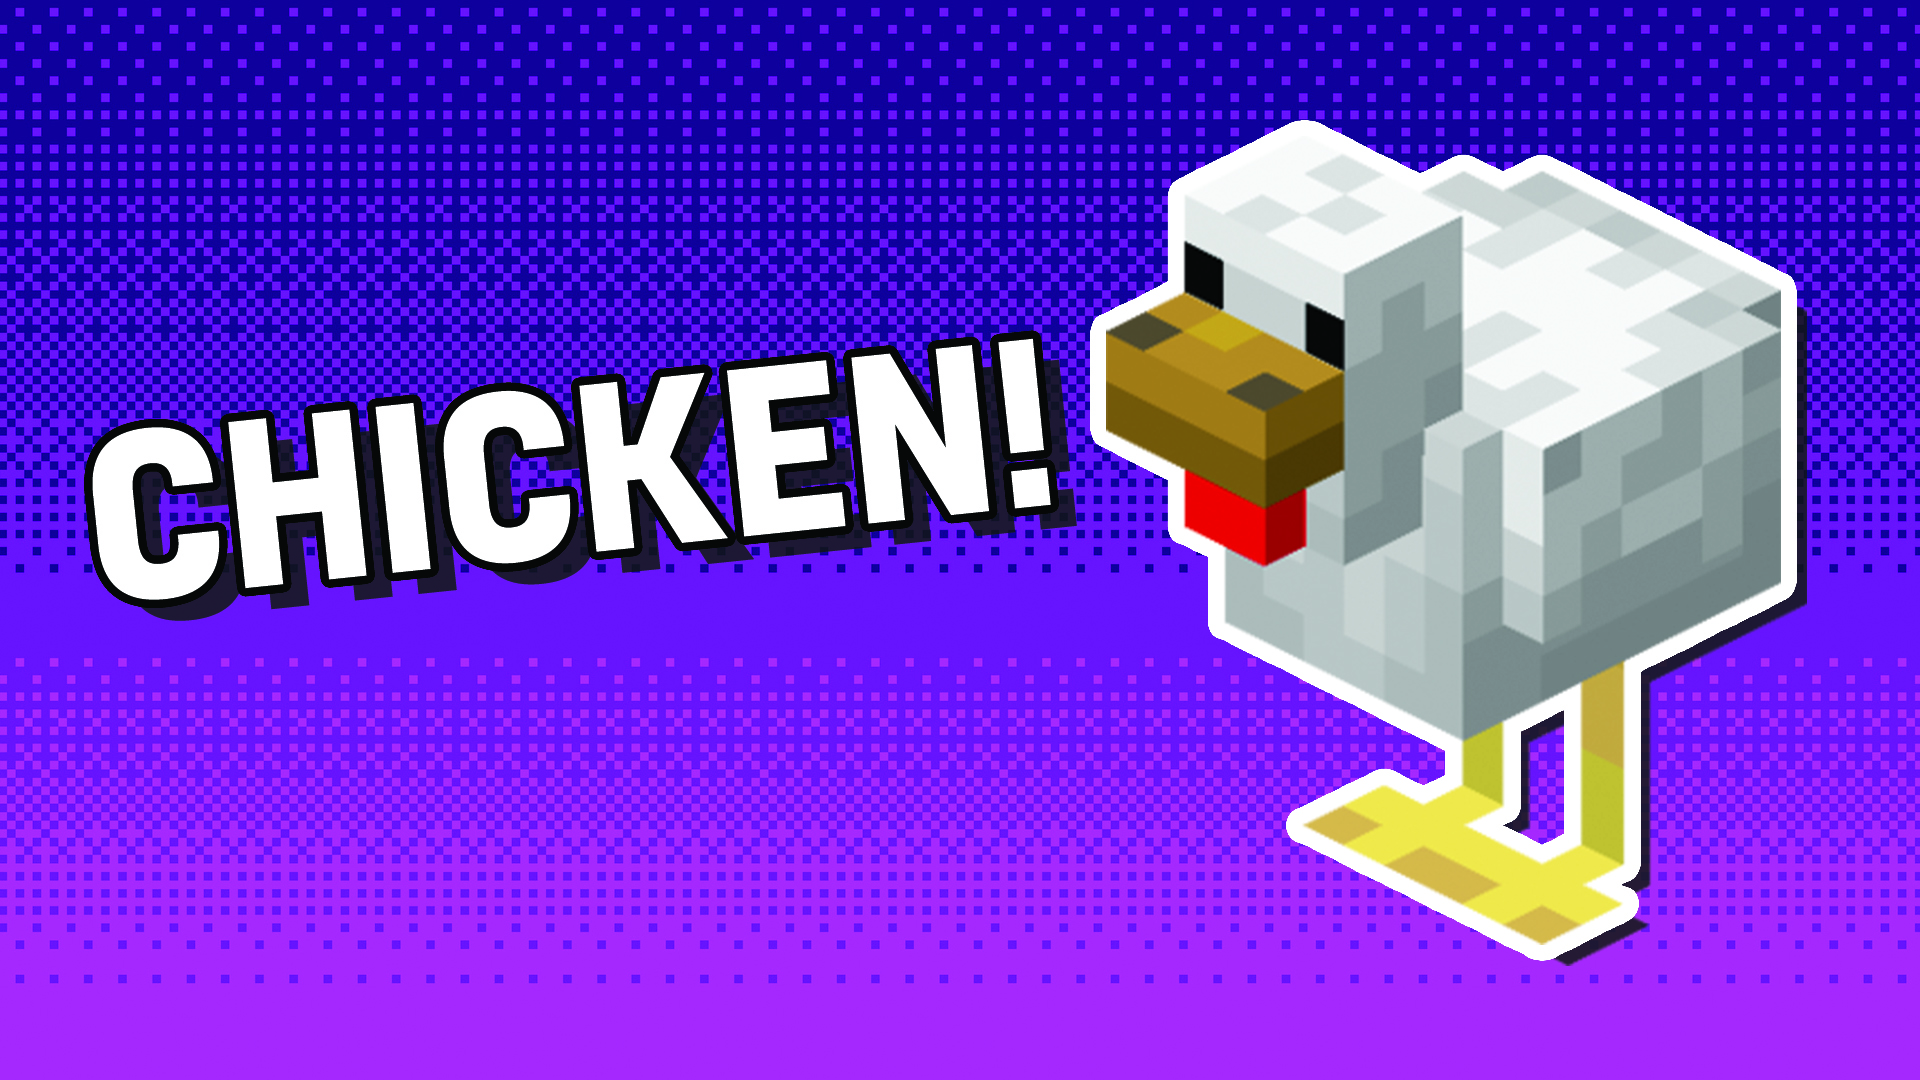 A Minecraft chicken